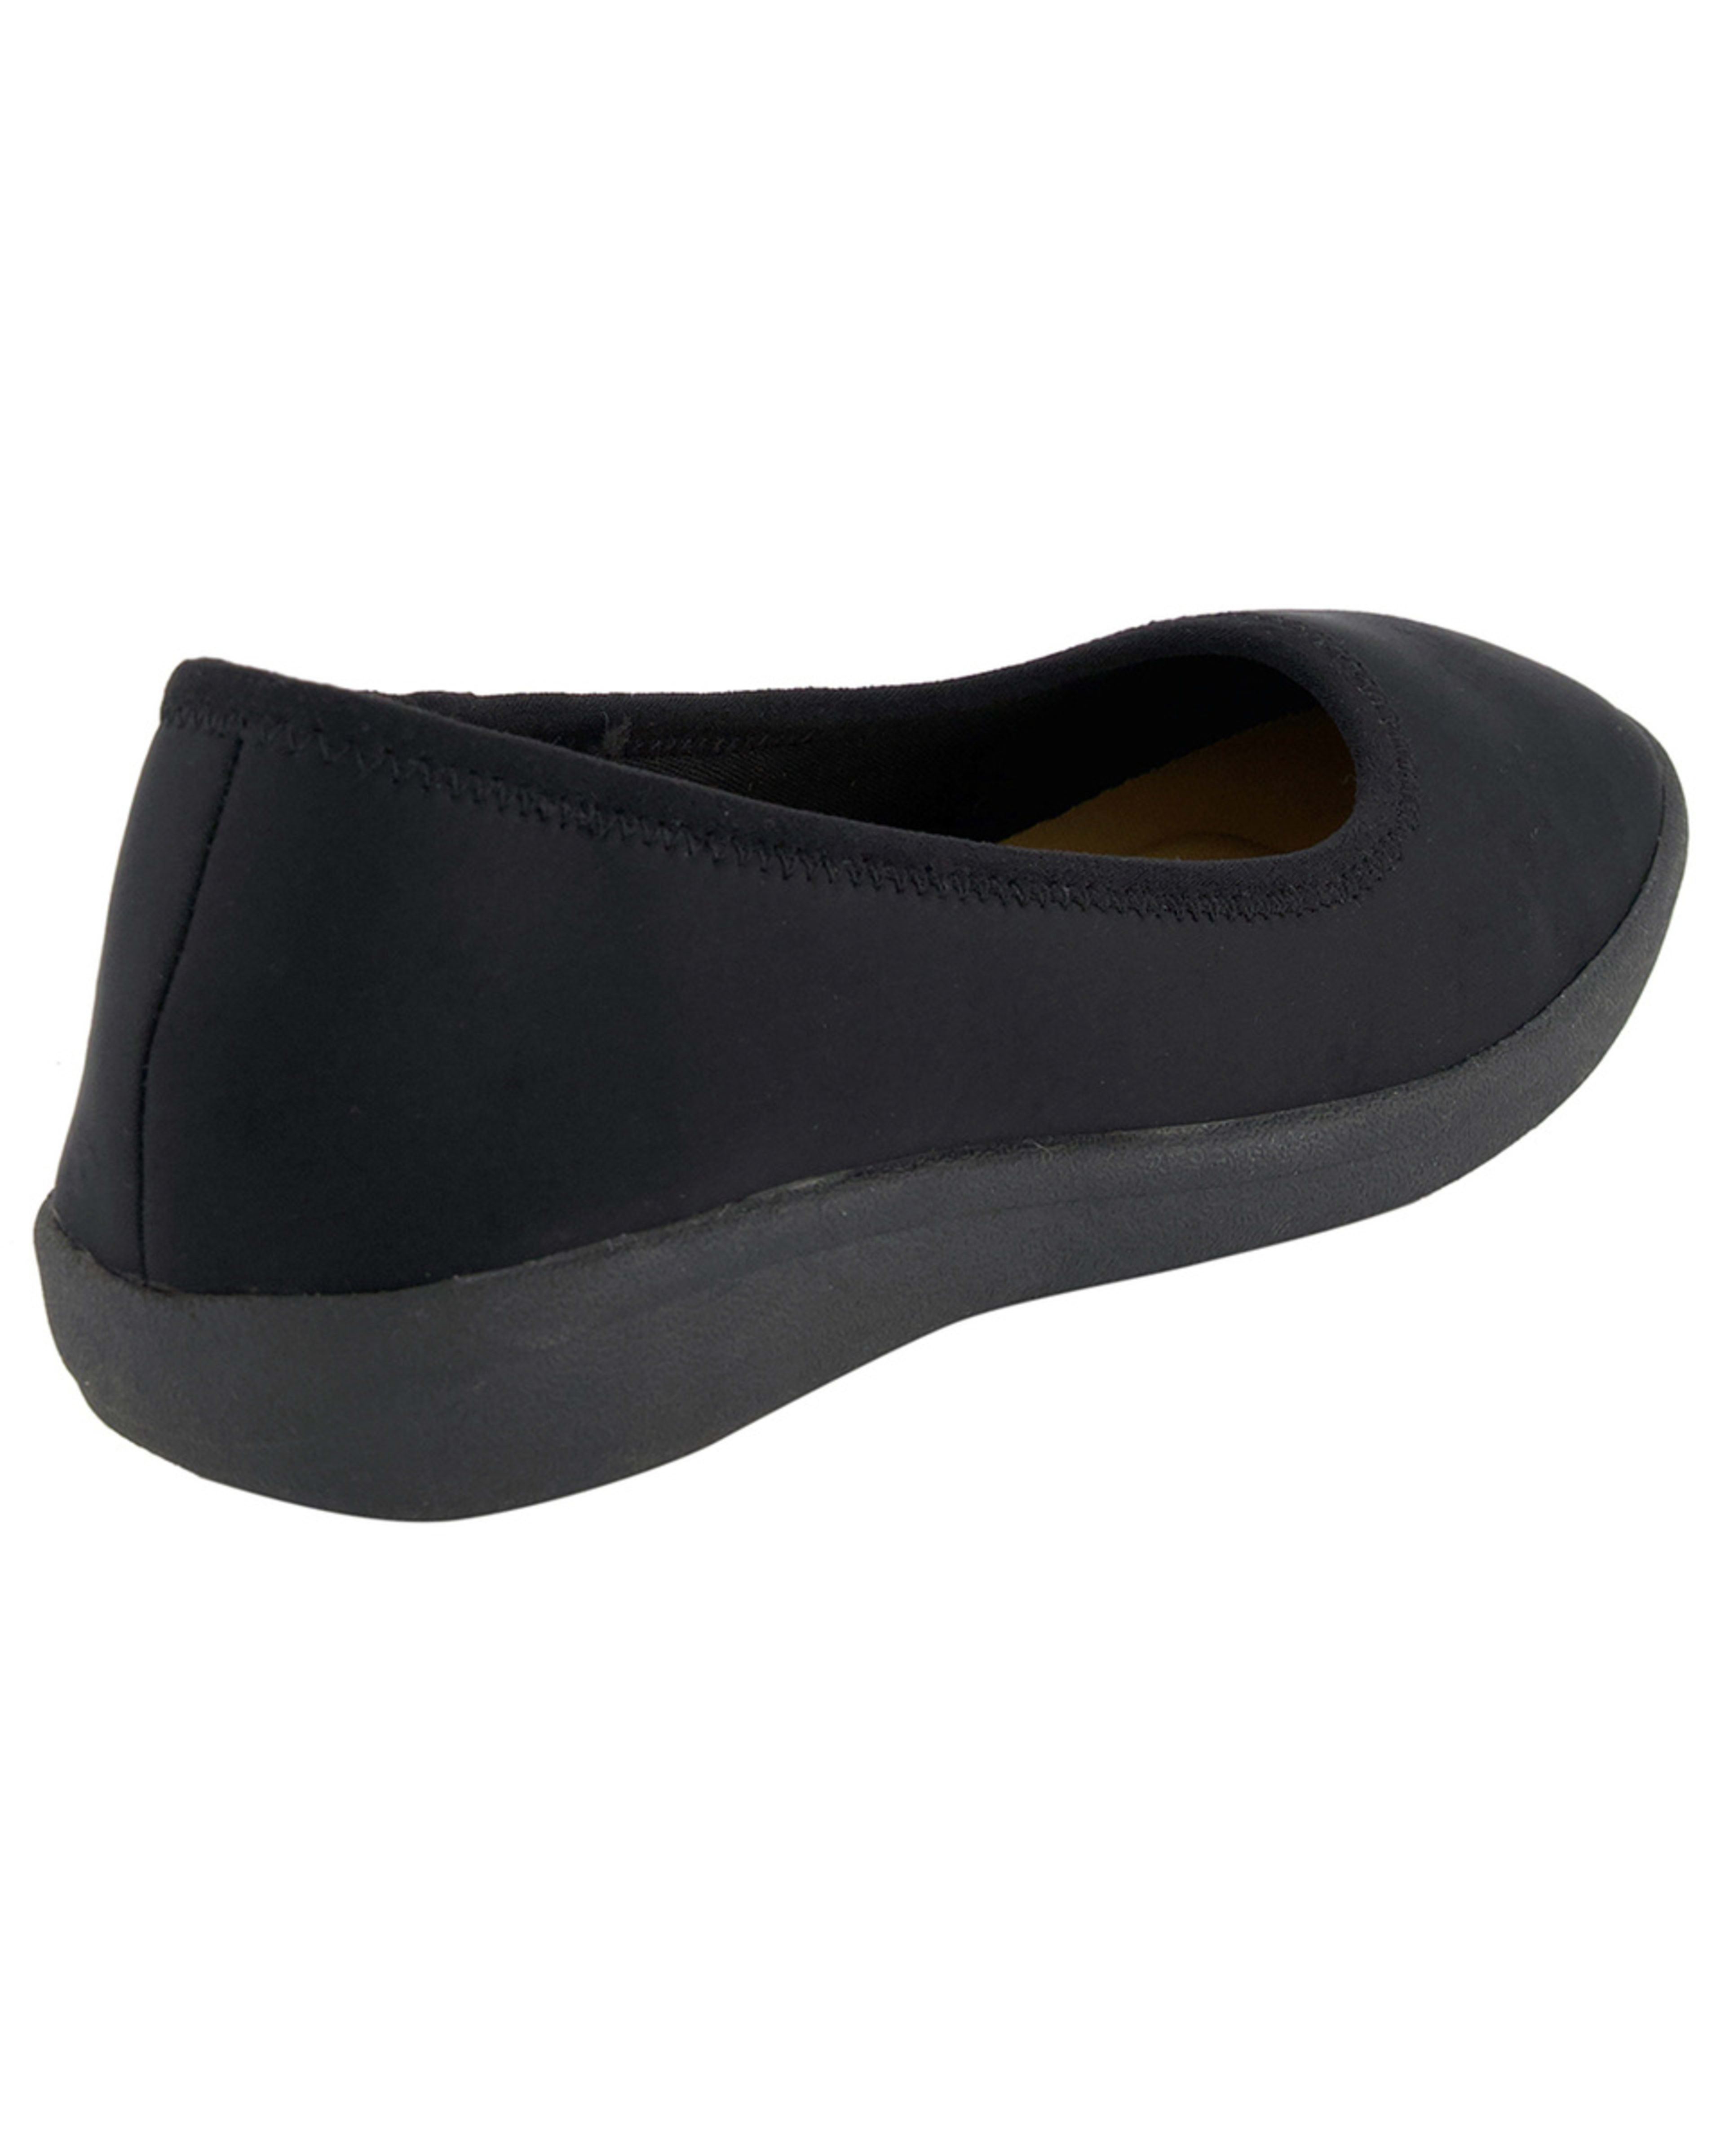 Neoprene Comfort Shoes - Kmart